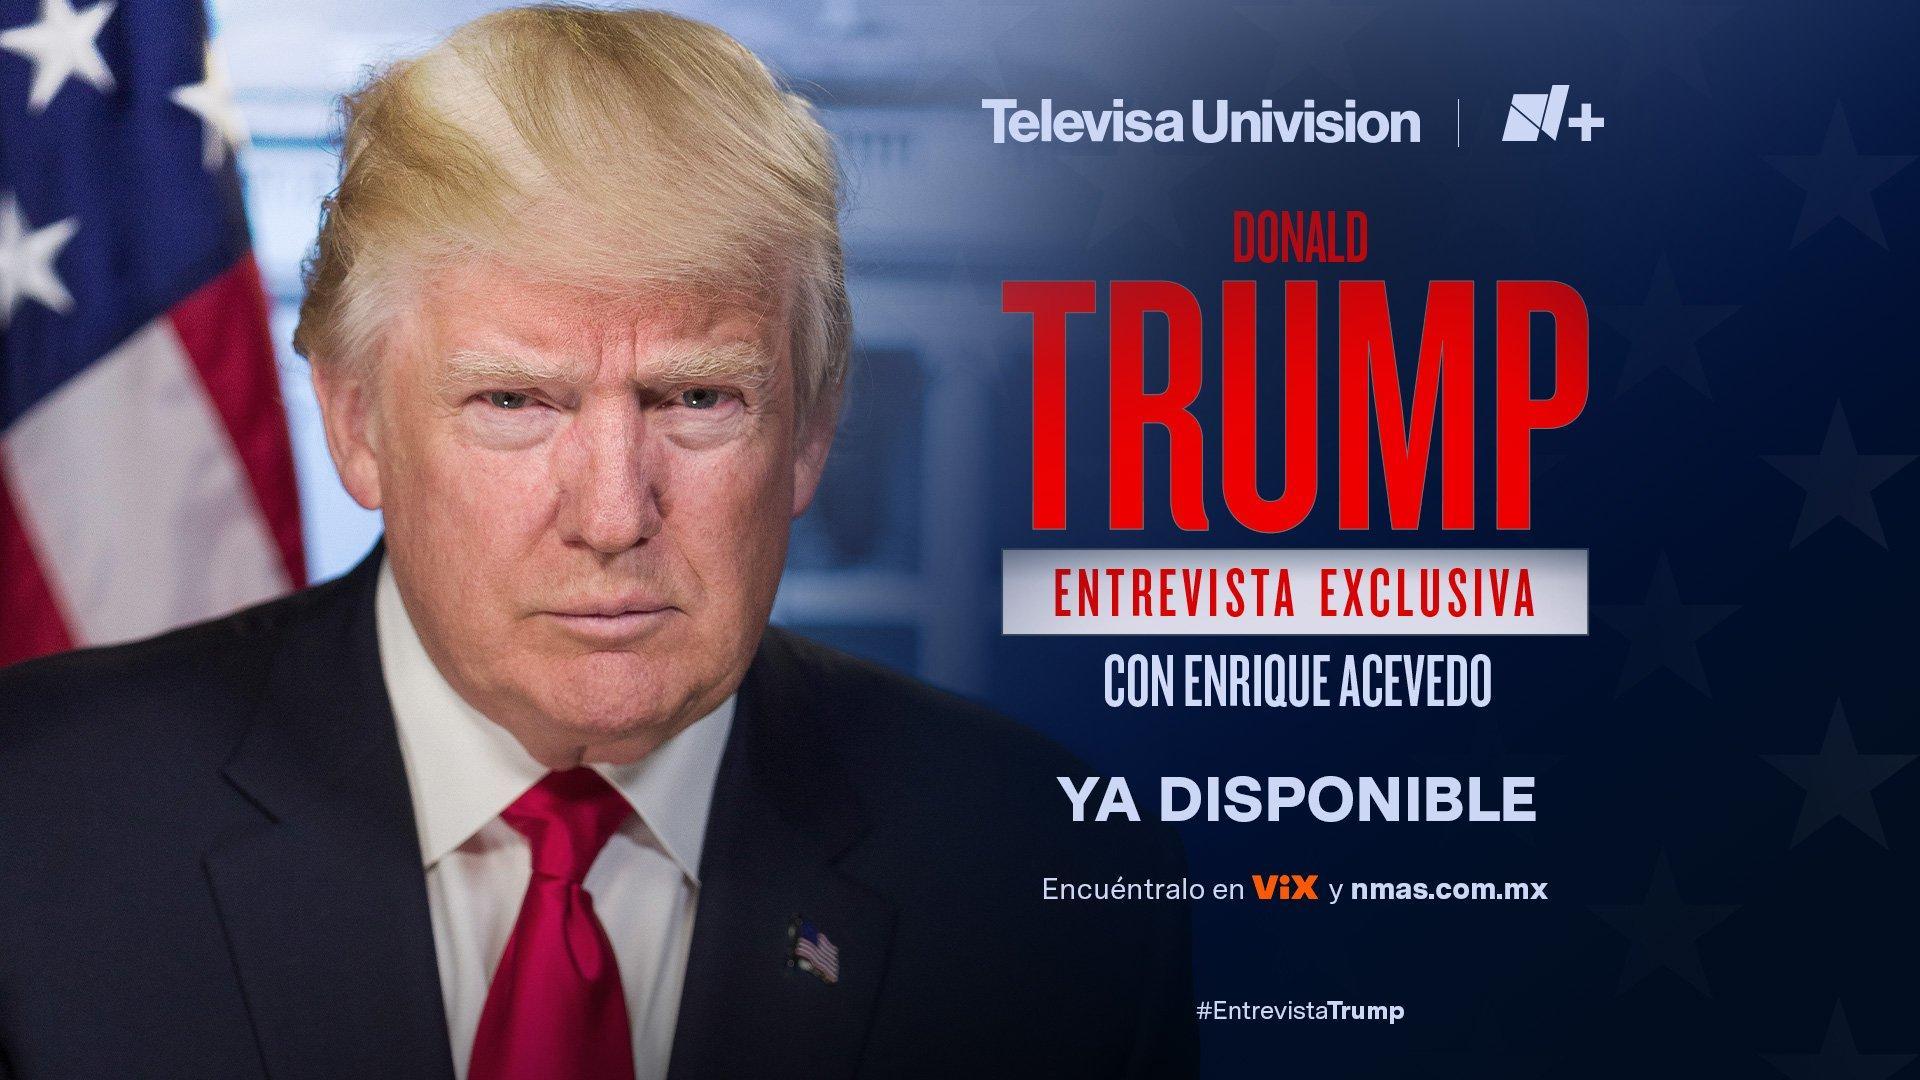 Donald Trump en Entrevista Exclusiva para TelevisaUnivisión y N+ con Enrique Acevedo